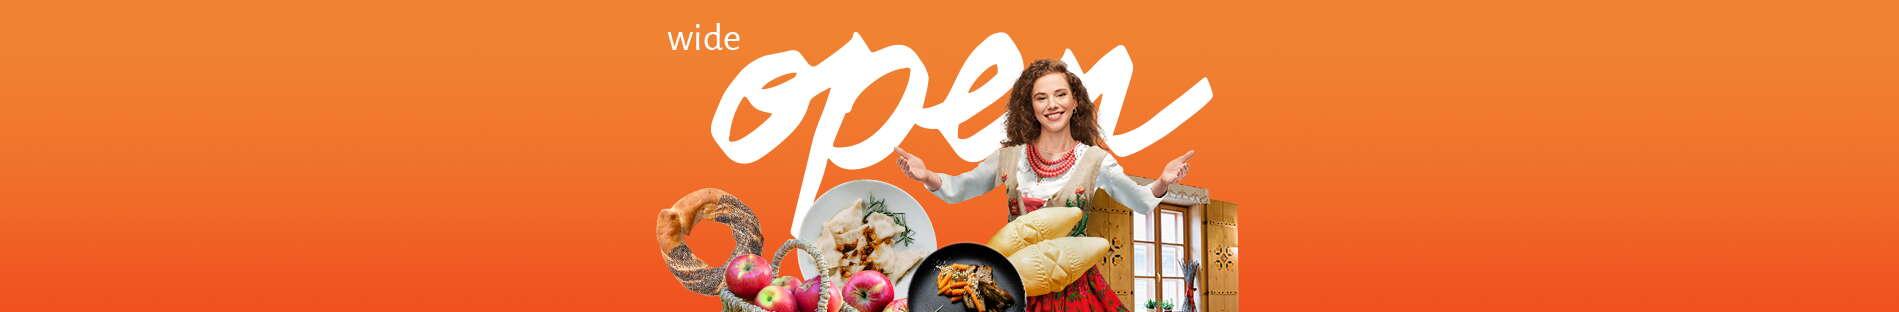 Baner kampanii Małopolska-Cel Podróży. Kolaż zdjęć, między innymi, osoby w stroju ludowym, talerze pełne regionalnych potraw.